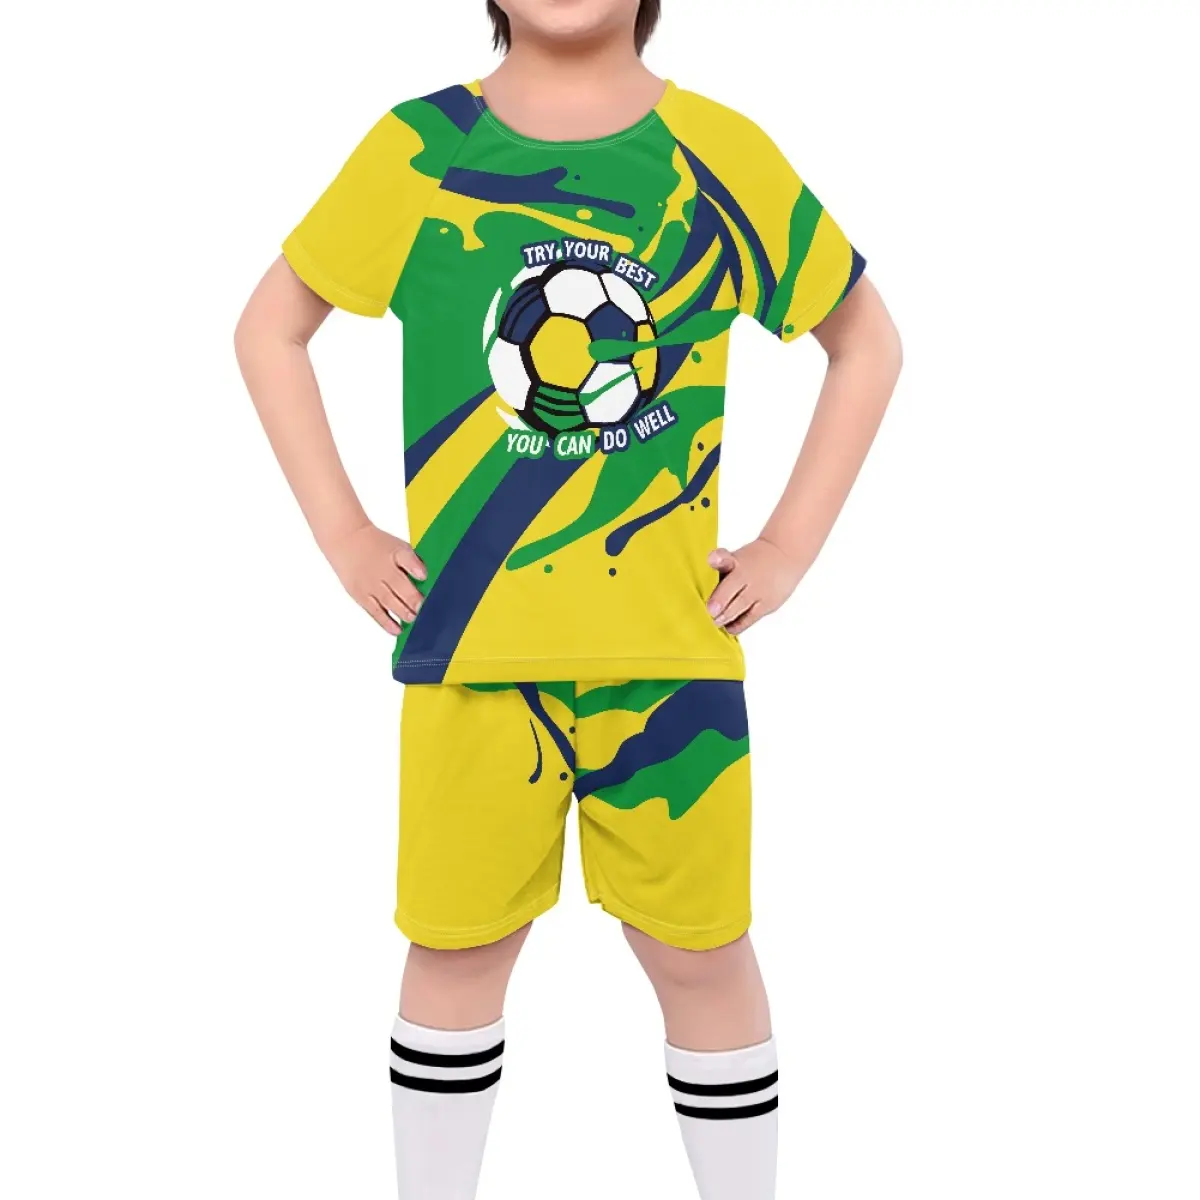 تي شيرت مطبوع عليه علم البرازيل لكرة القدم للكبار والصغار تي شيرت رقم مخصص للاستخدام الخارجي تي شيرت قصير مطبوع عليه الرمز الرخيص